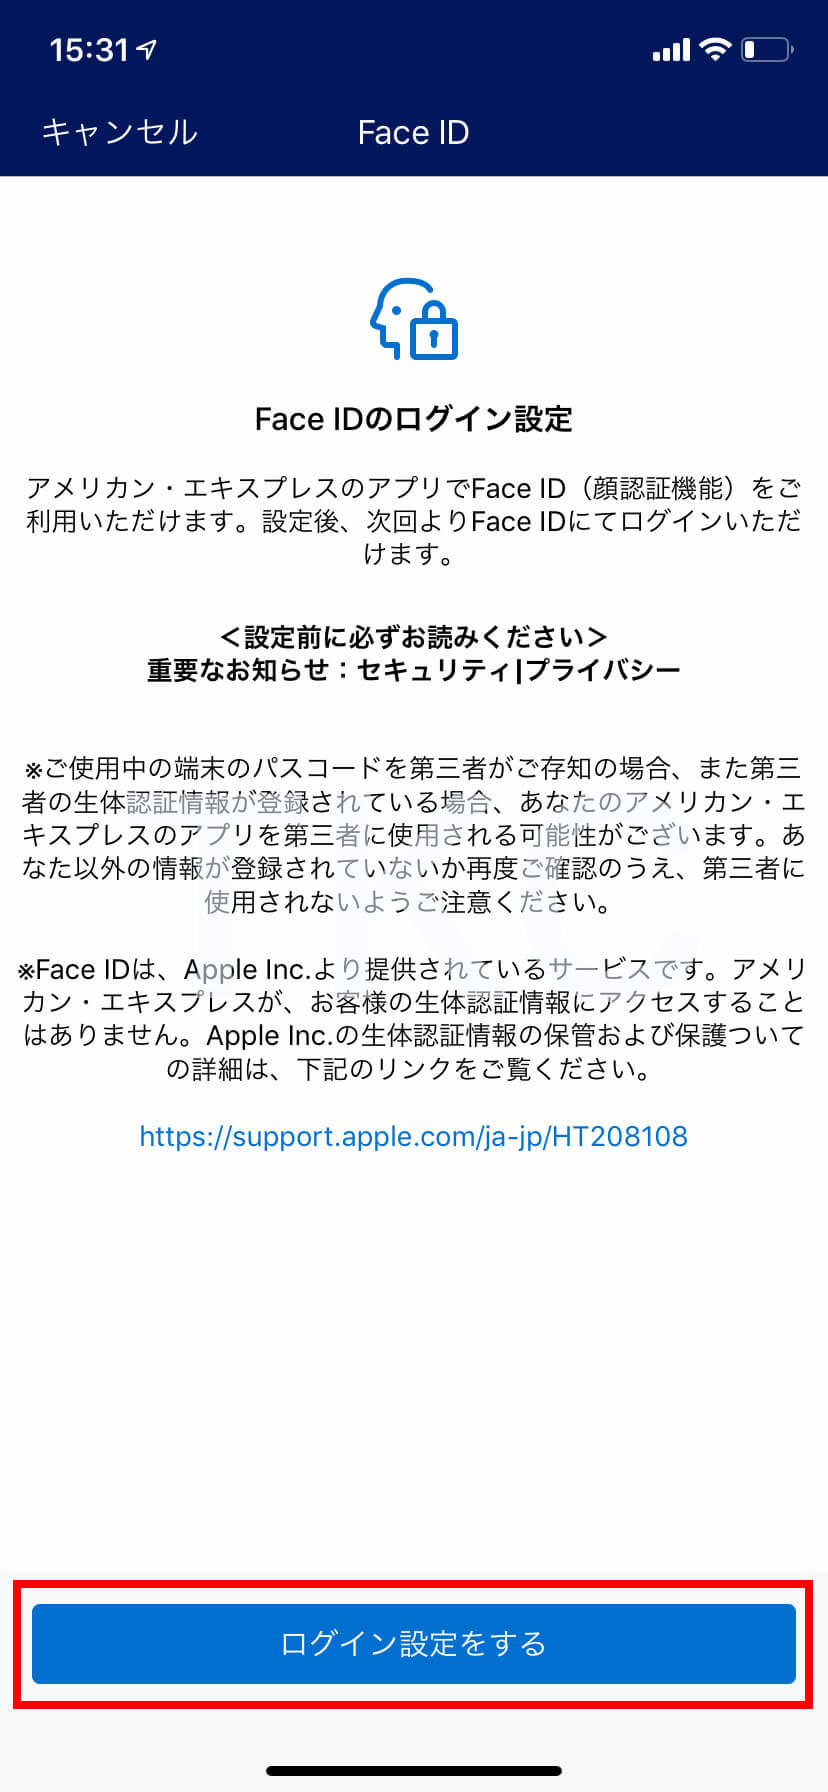 iPhoneX以上を使っている人はFace IDの設定画面が表示されます。